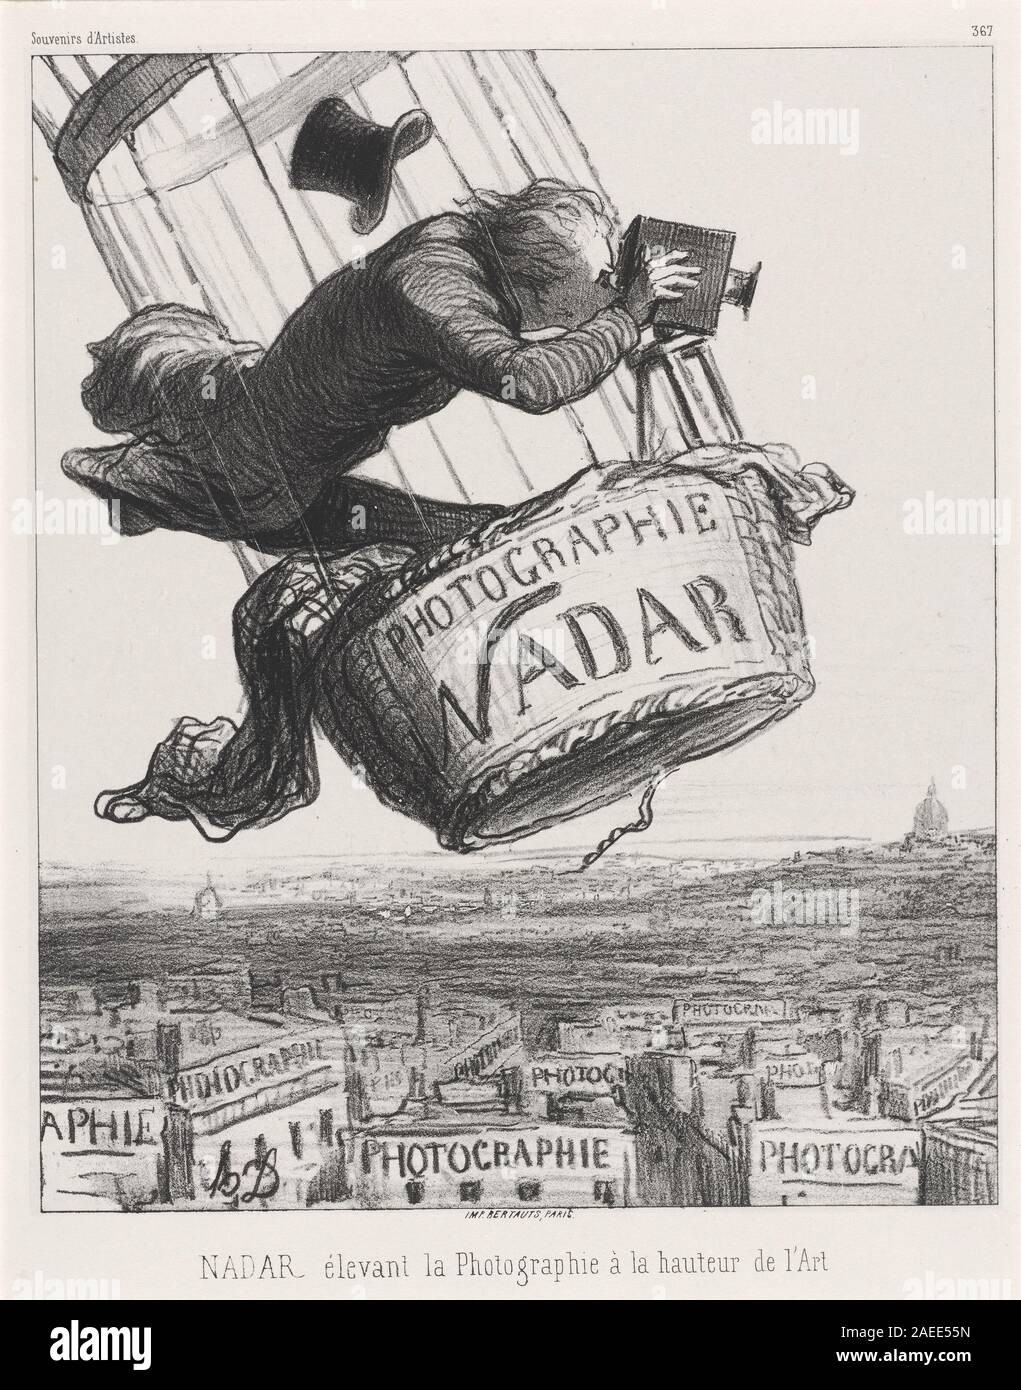 Honoré Daumier, Nadar élevant la Photographie à la hauteur de l'Art, 1862 Nadar élevant la Photographie à la hauteur de l'Art; 1862date Stock Photo